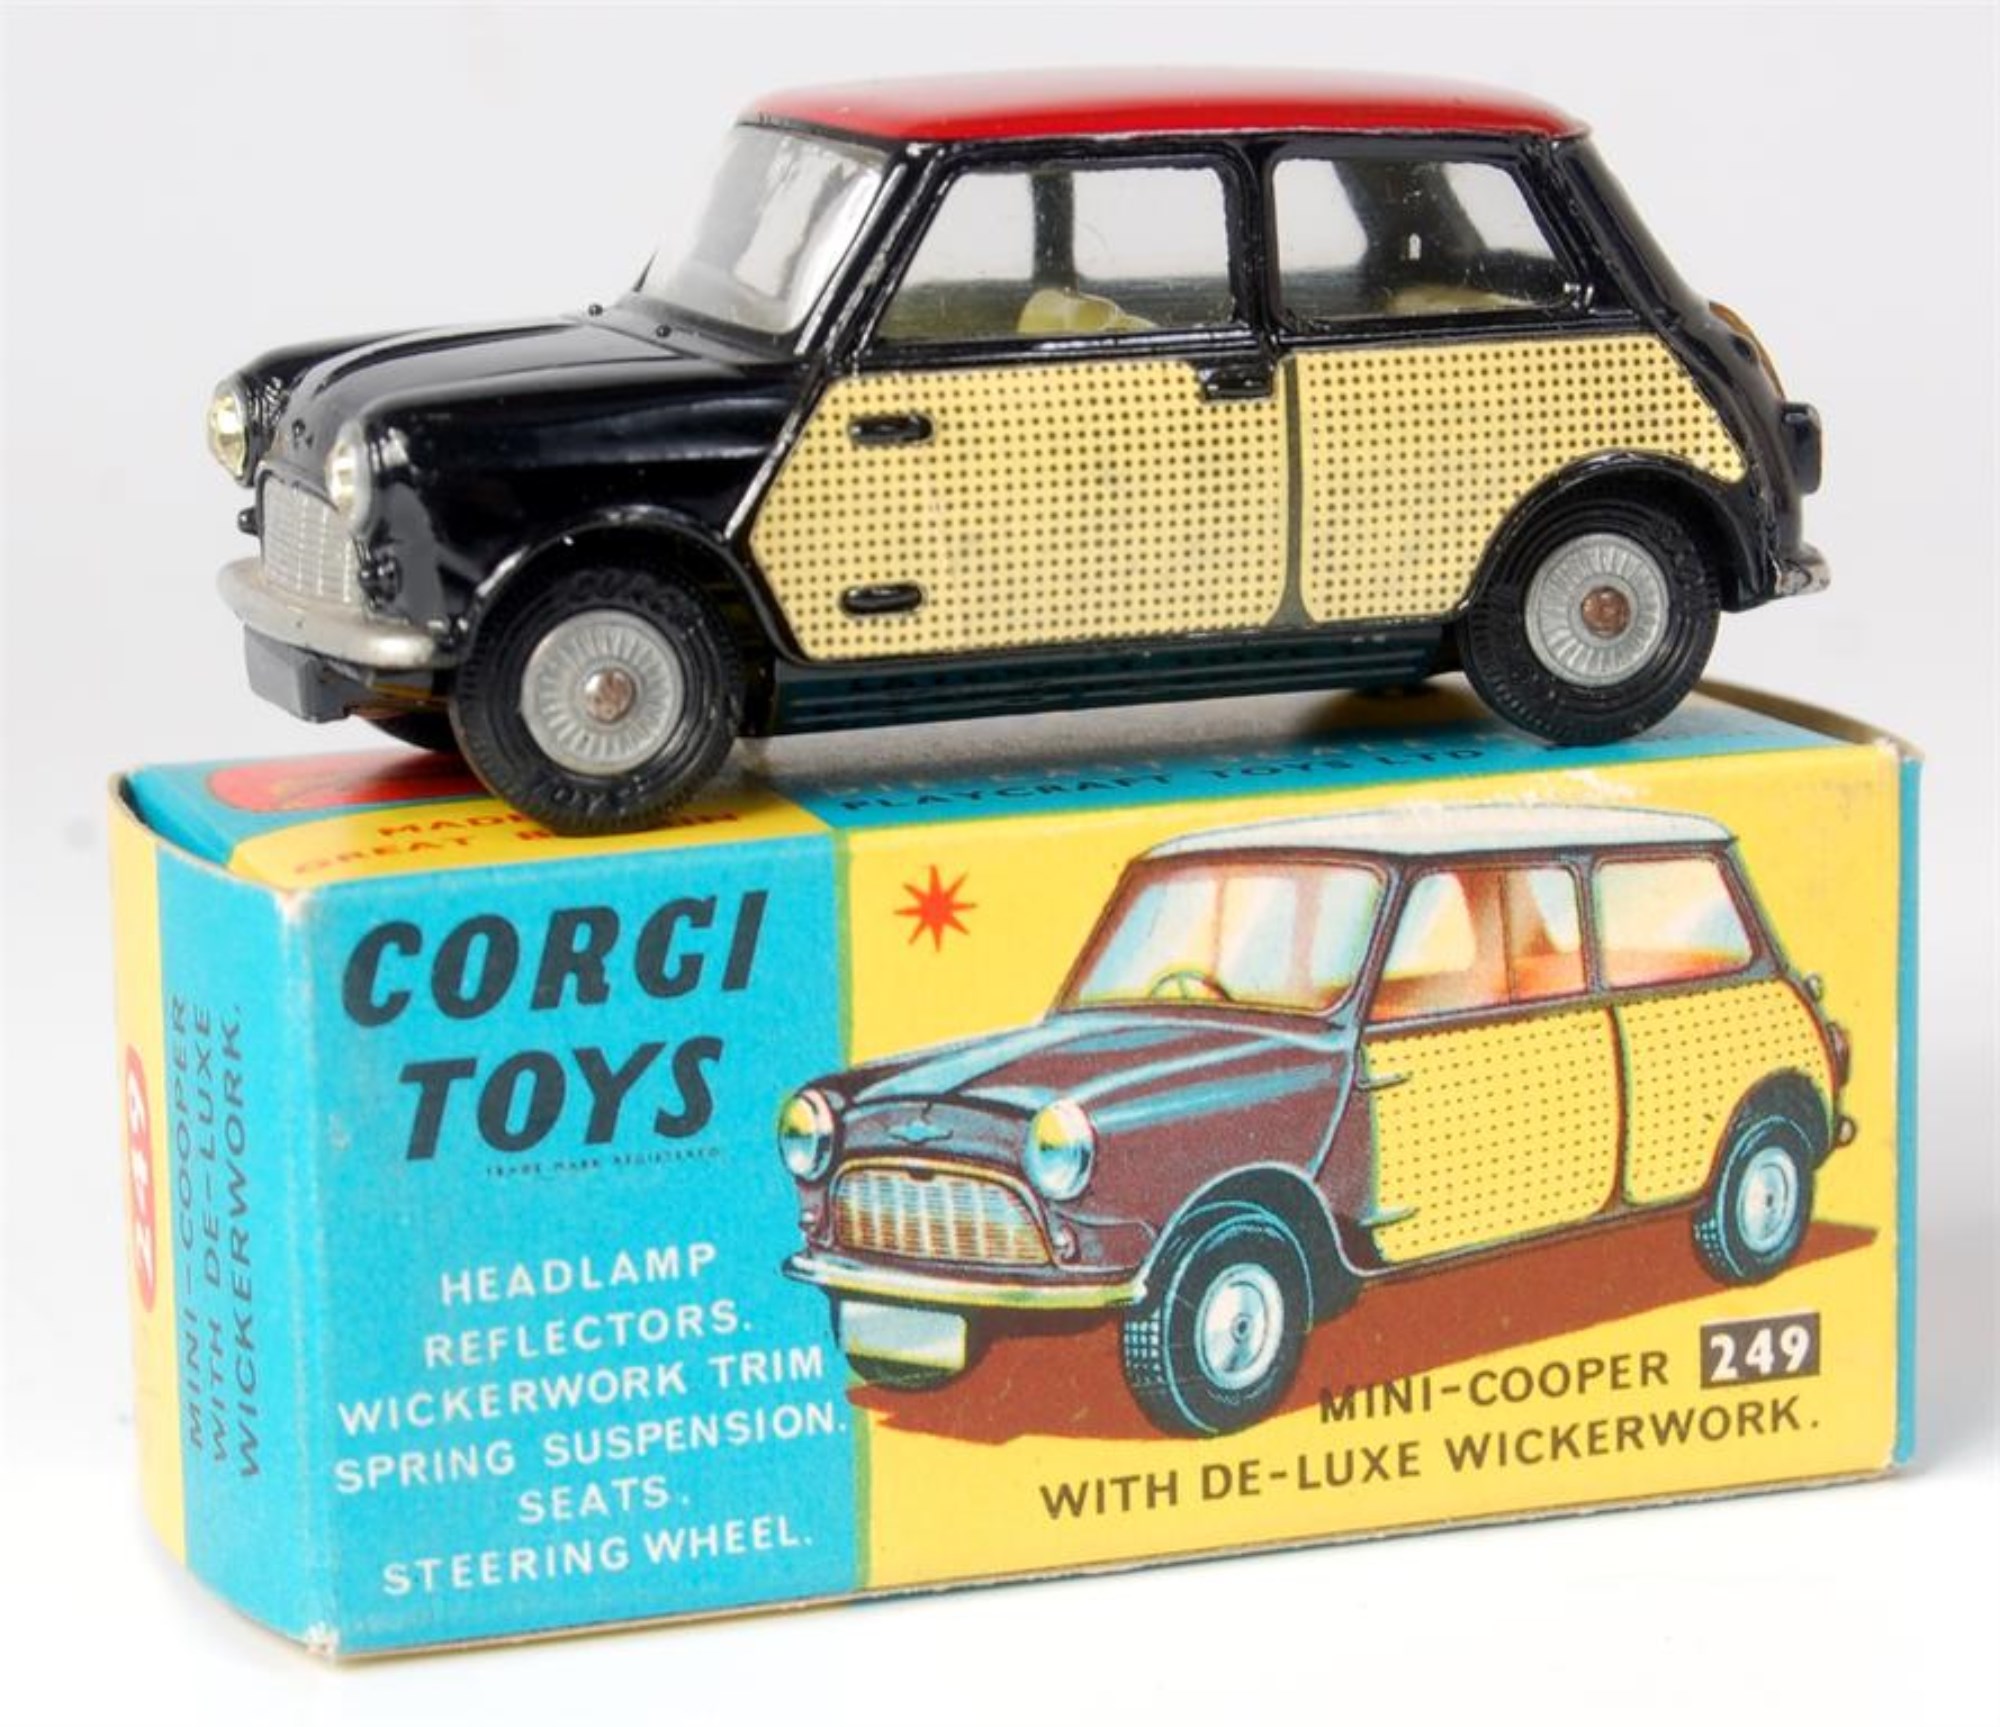 Lot 1634 - Corgi Toys, 249 Morris Mini Cooper with